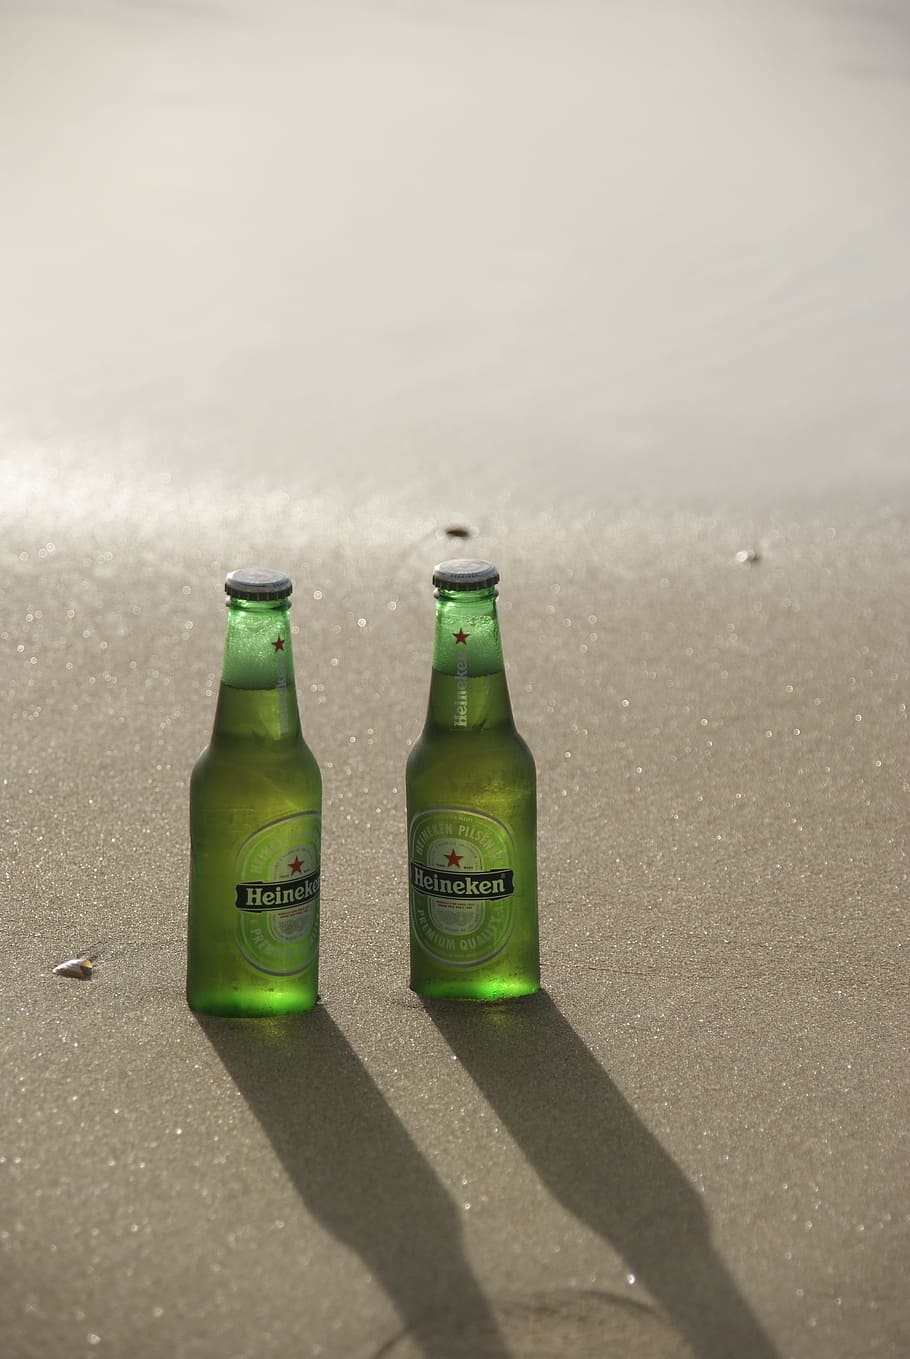 dua botol heineken, Bir, Botol, Pantai, Pasir, Matahari, botol bir, heineken, minuman, haus